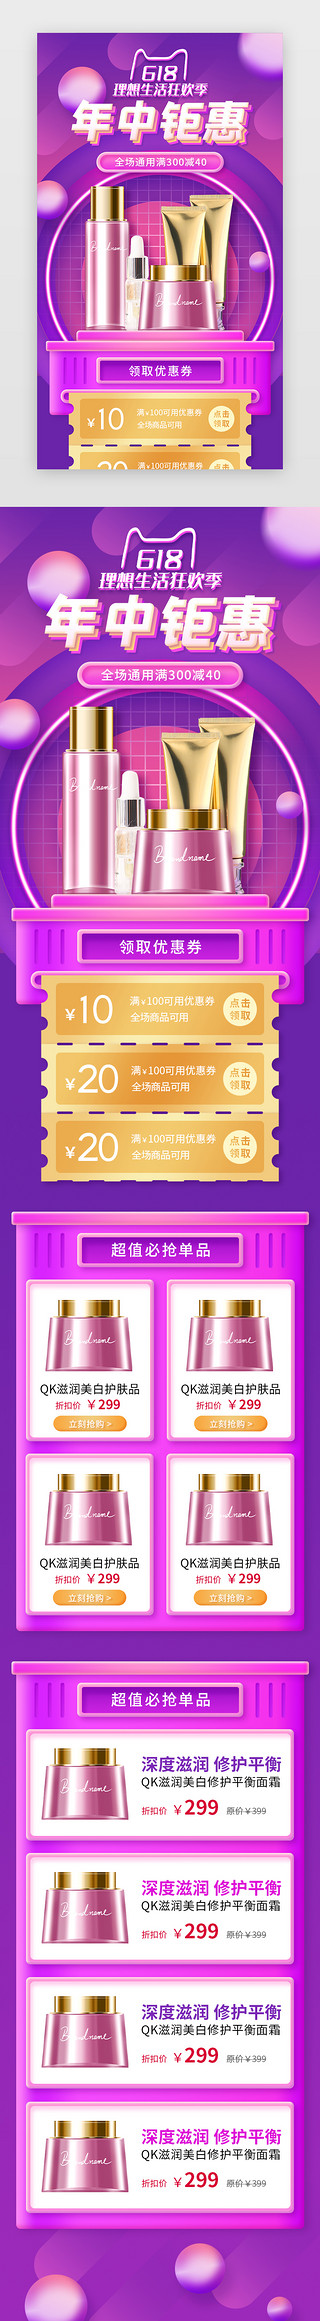 电商促销活动页面UI设计素材_粉紫色618年中钜惠电商H5